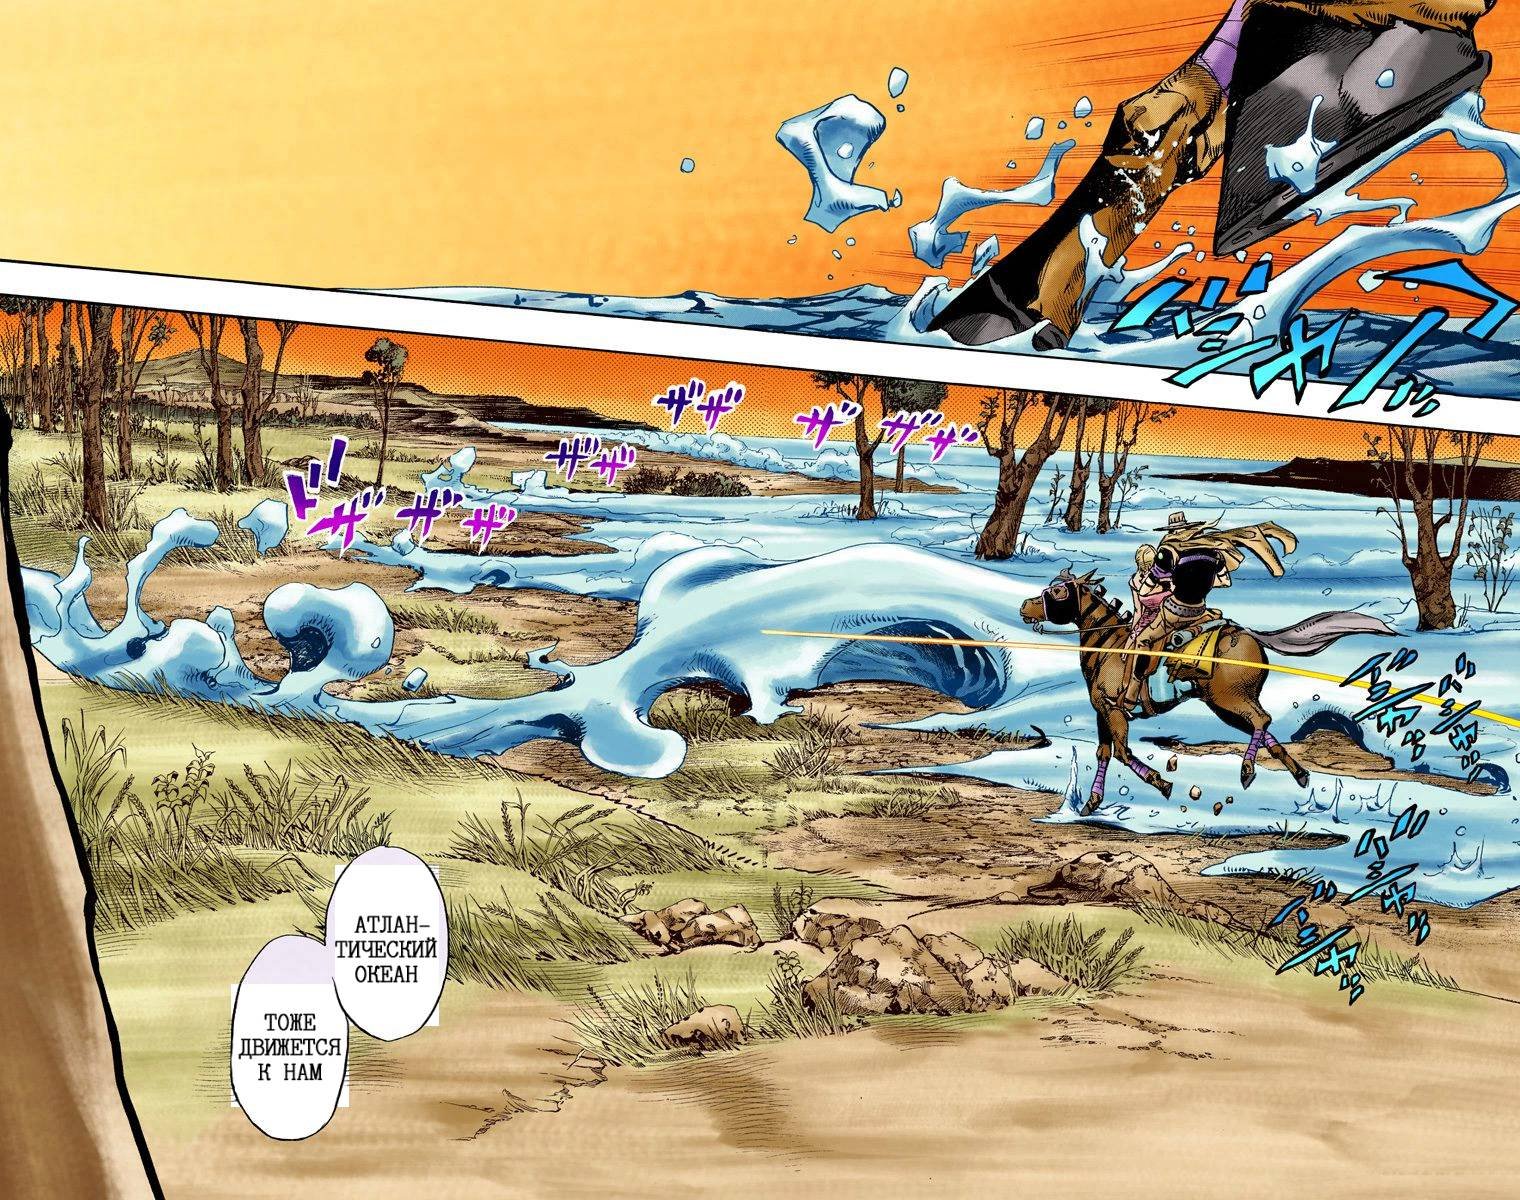 Невероятные Приключения ДжоДжо Часть 7: Steel Ball Run (Цветная версия). 